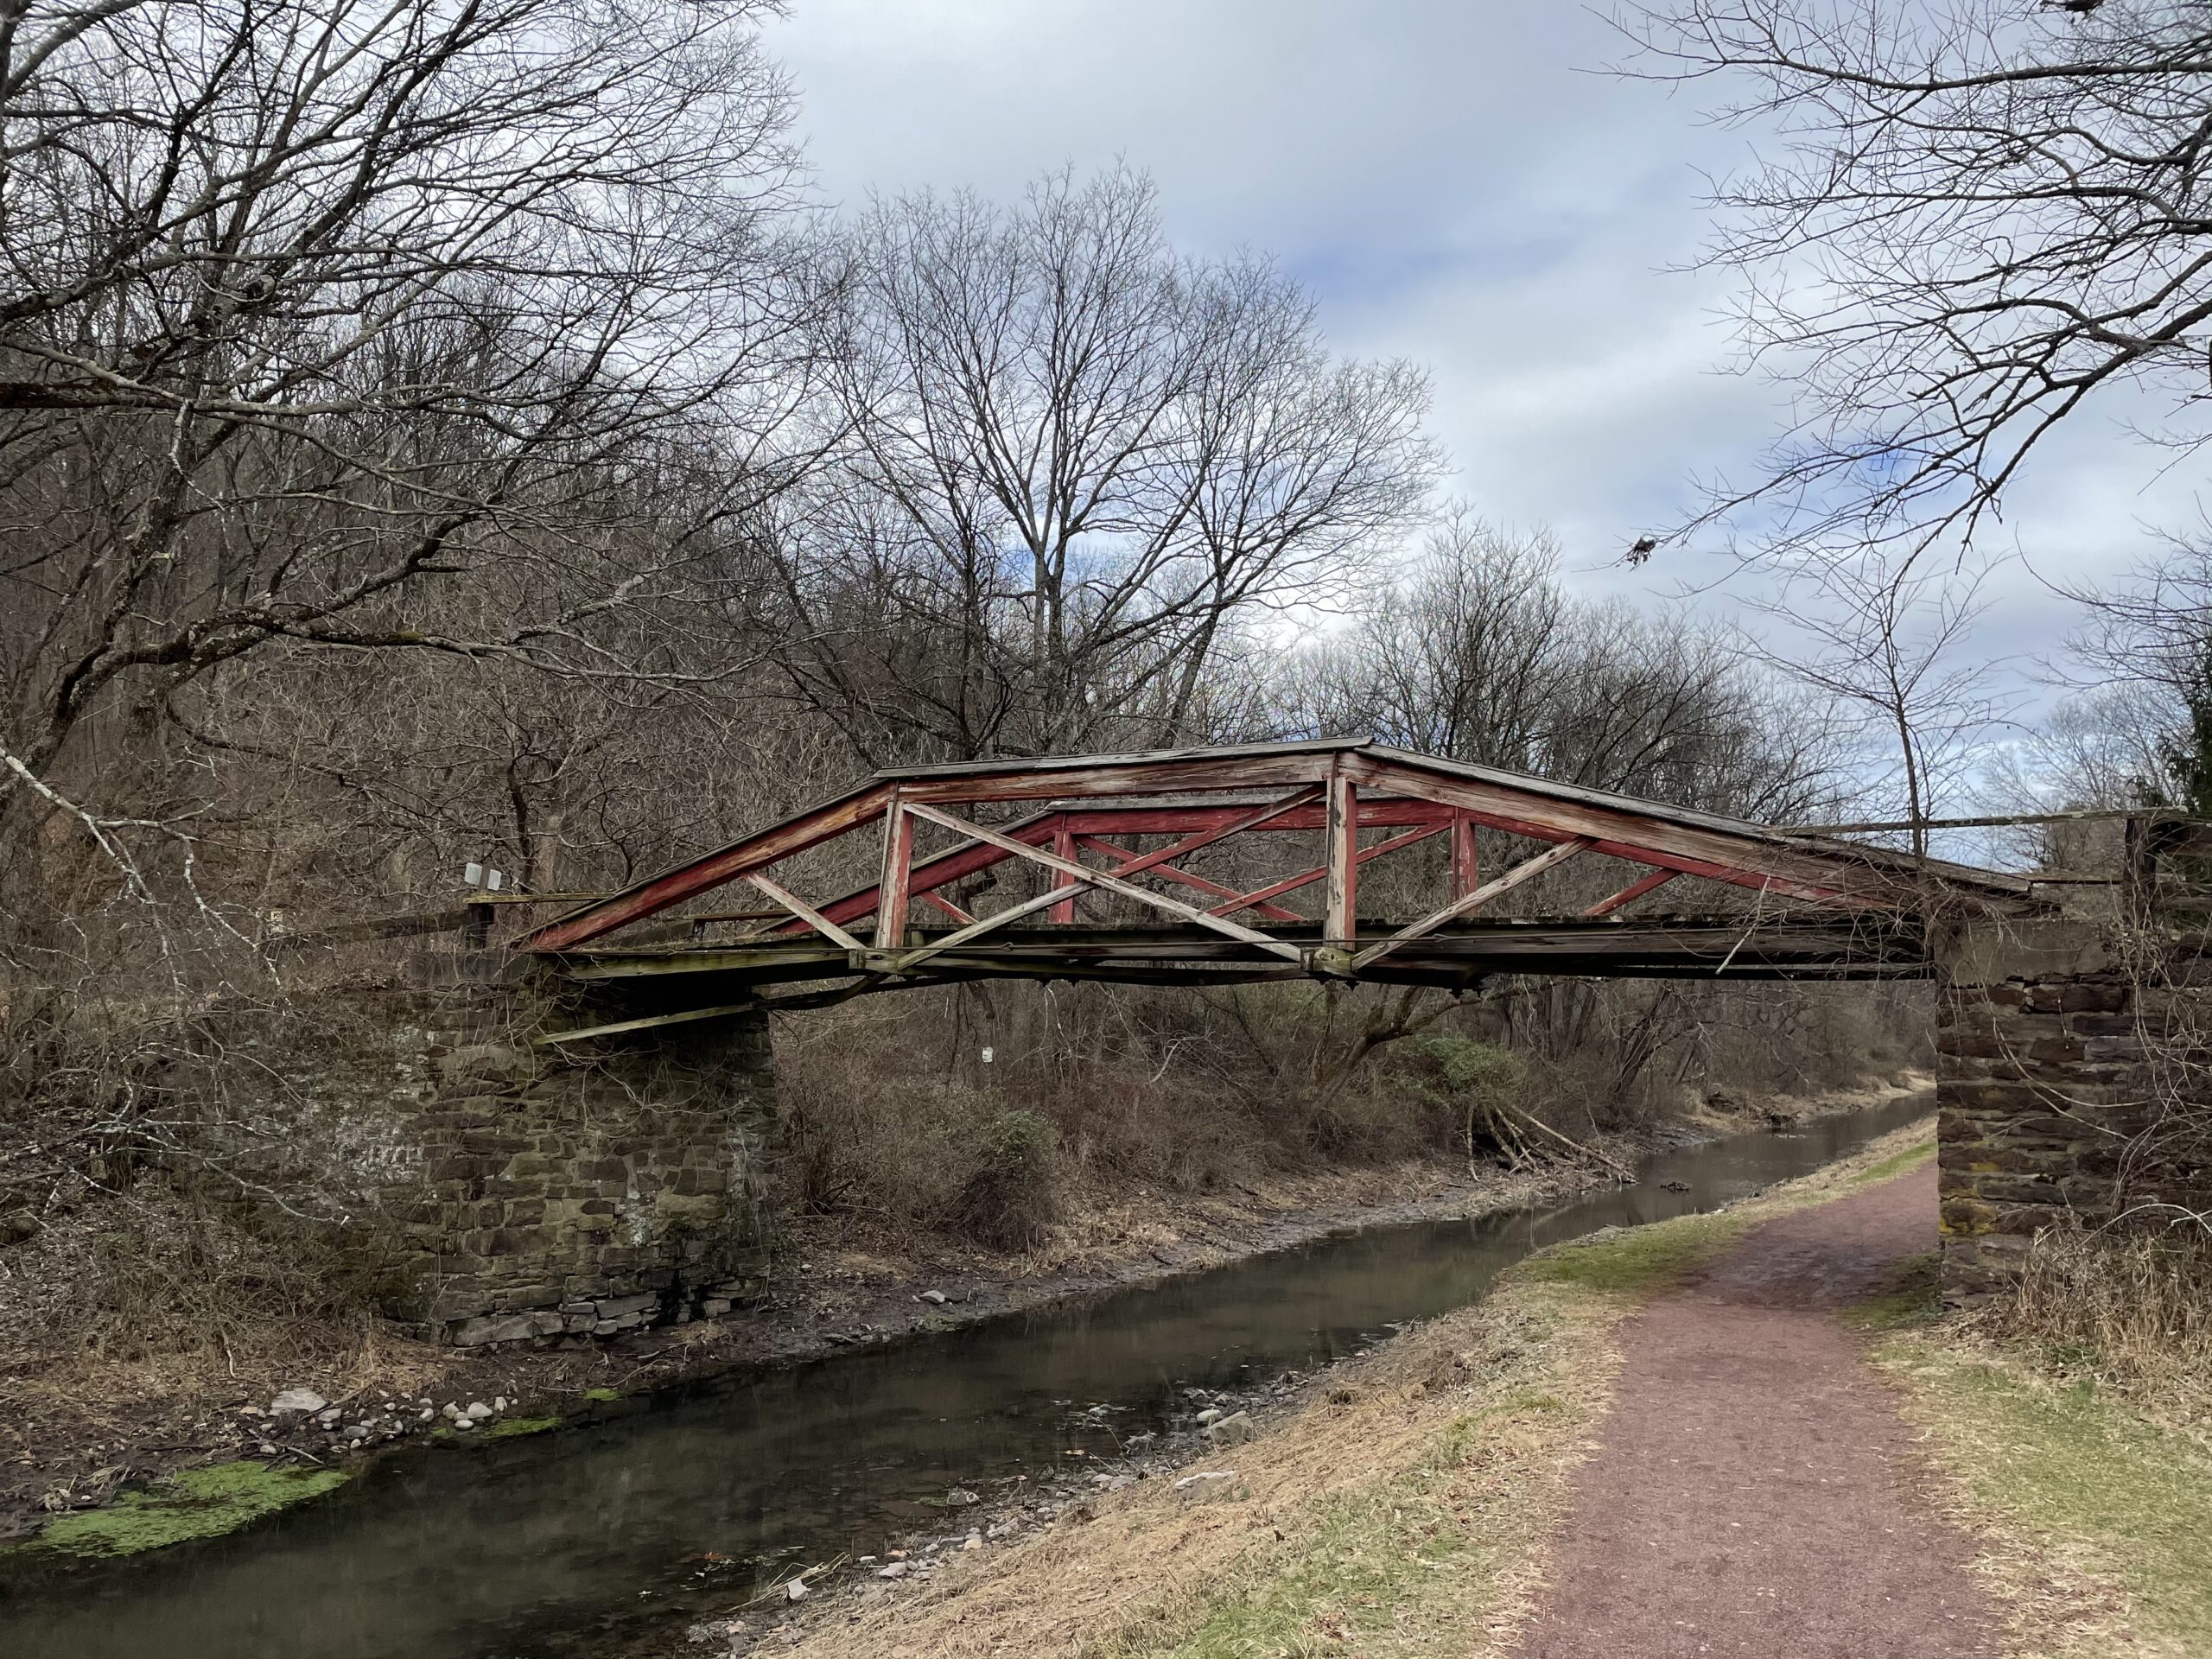 Spahr's authentic Camelback Bridge